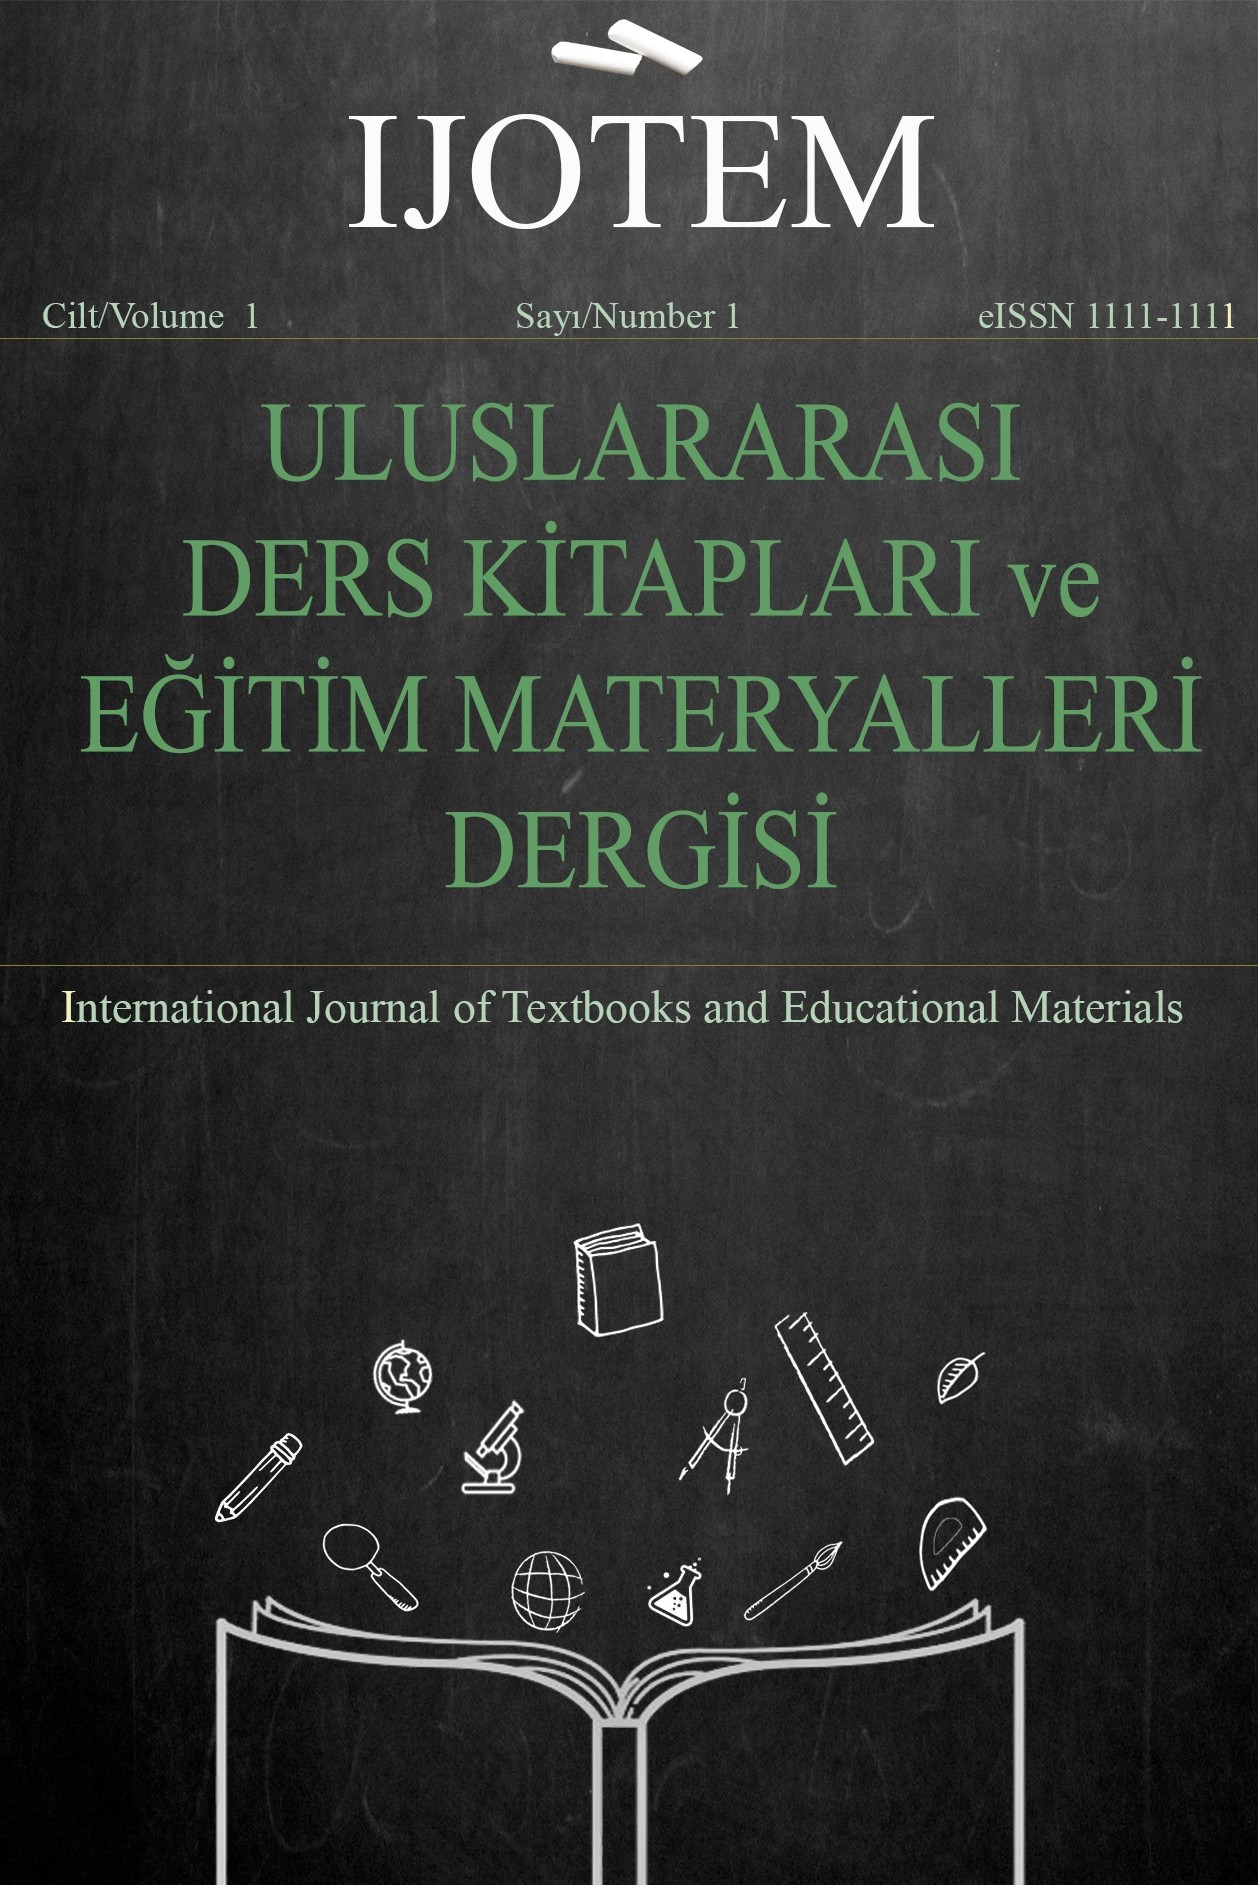 Uluslararası Ders Kitapları ve Eğitim Materyalleri Dergisi-Cover